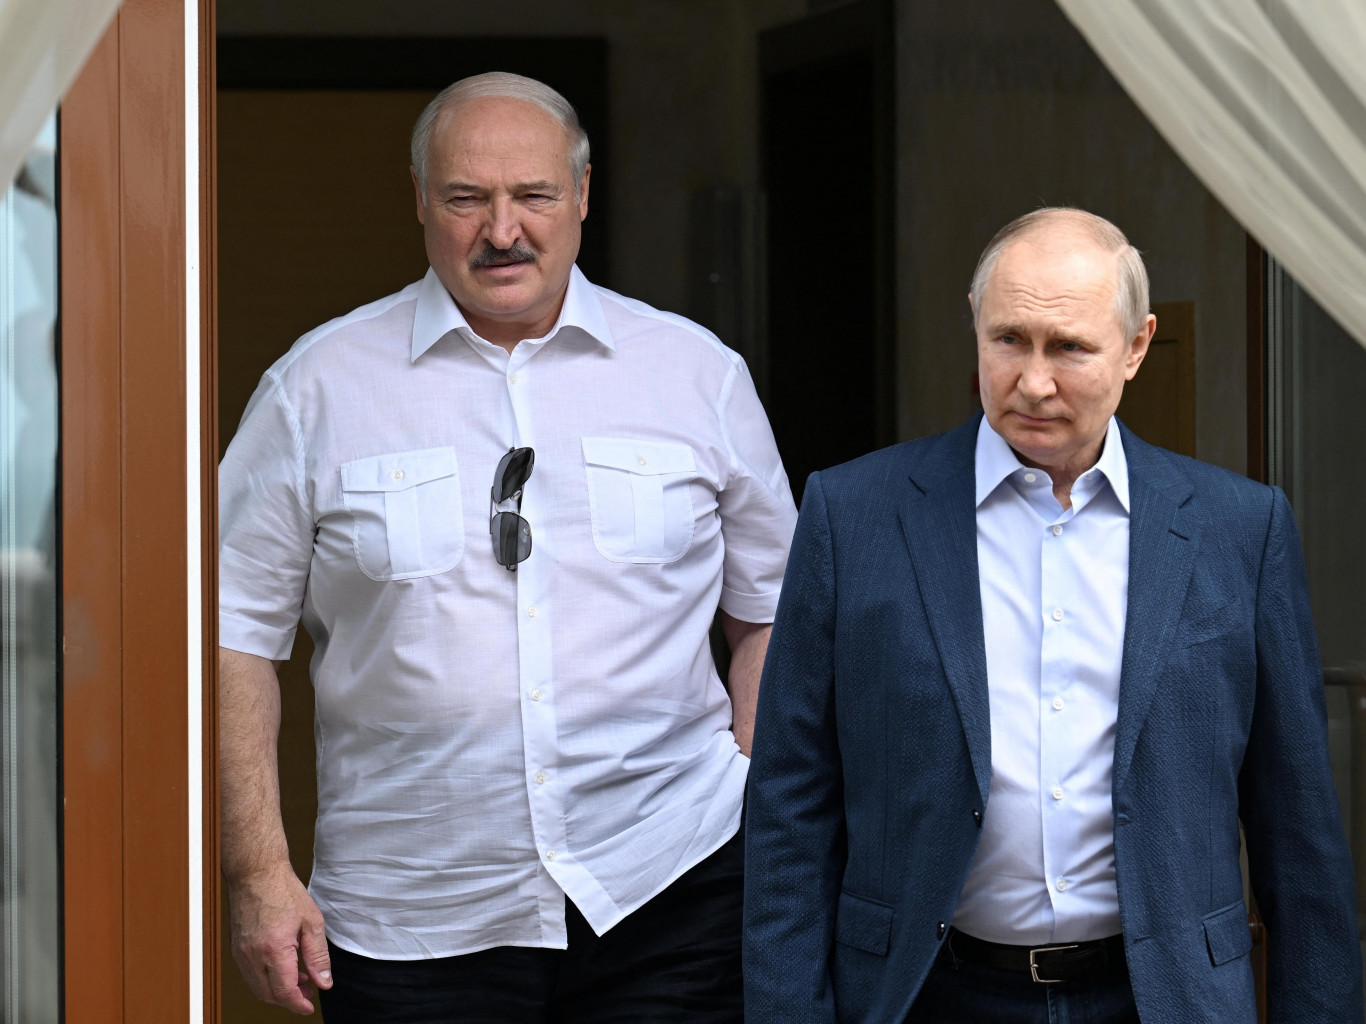 Лукашенко видится с Путиным и российскими чиновниками чаще, чем проводит встречи по беларусской повестке